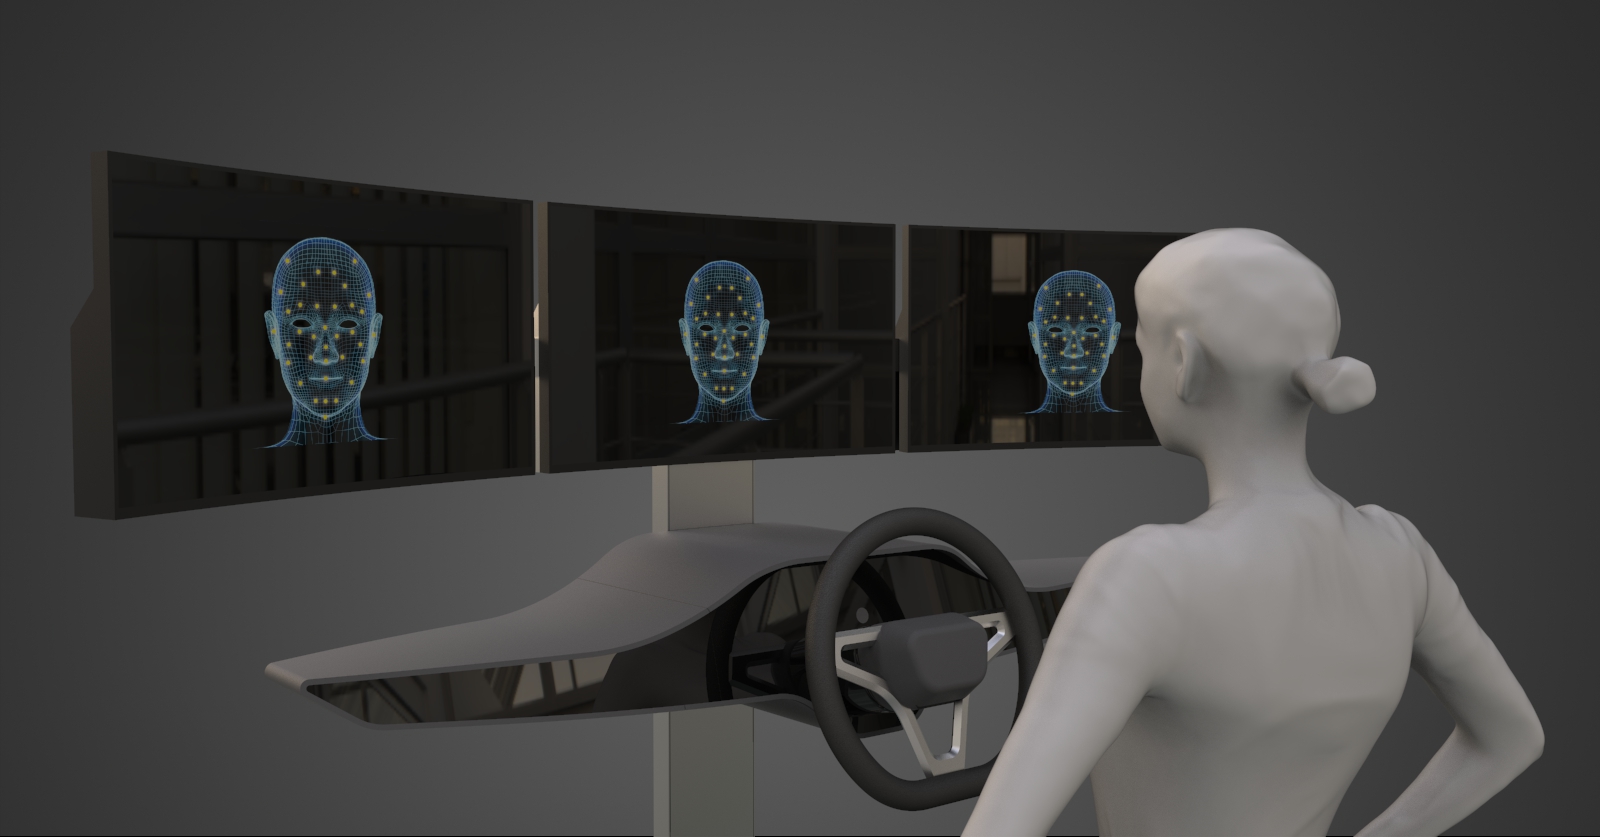 艾迈斯欧司朗发布高性能3D传感概念验证系统,支持先进驾驶员状态监测功能